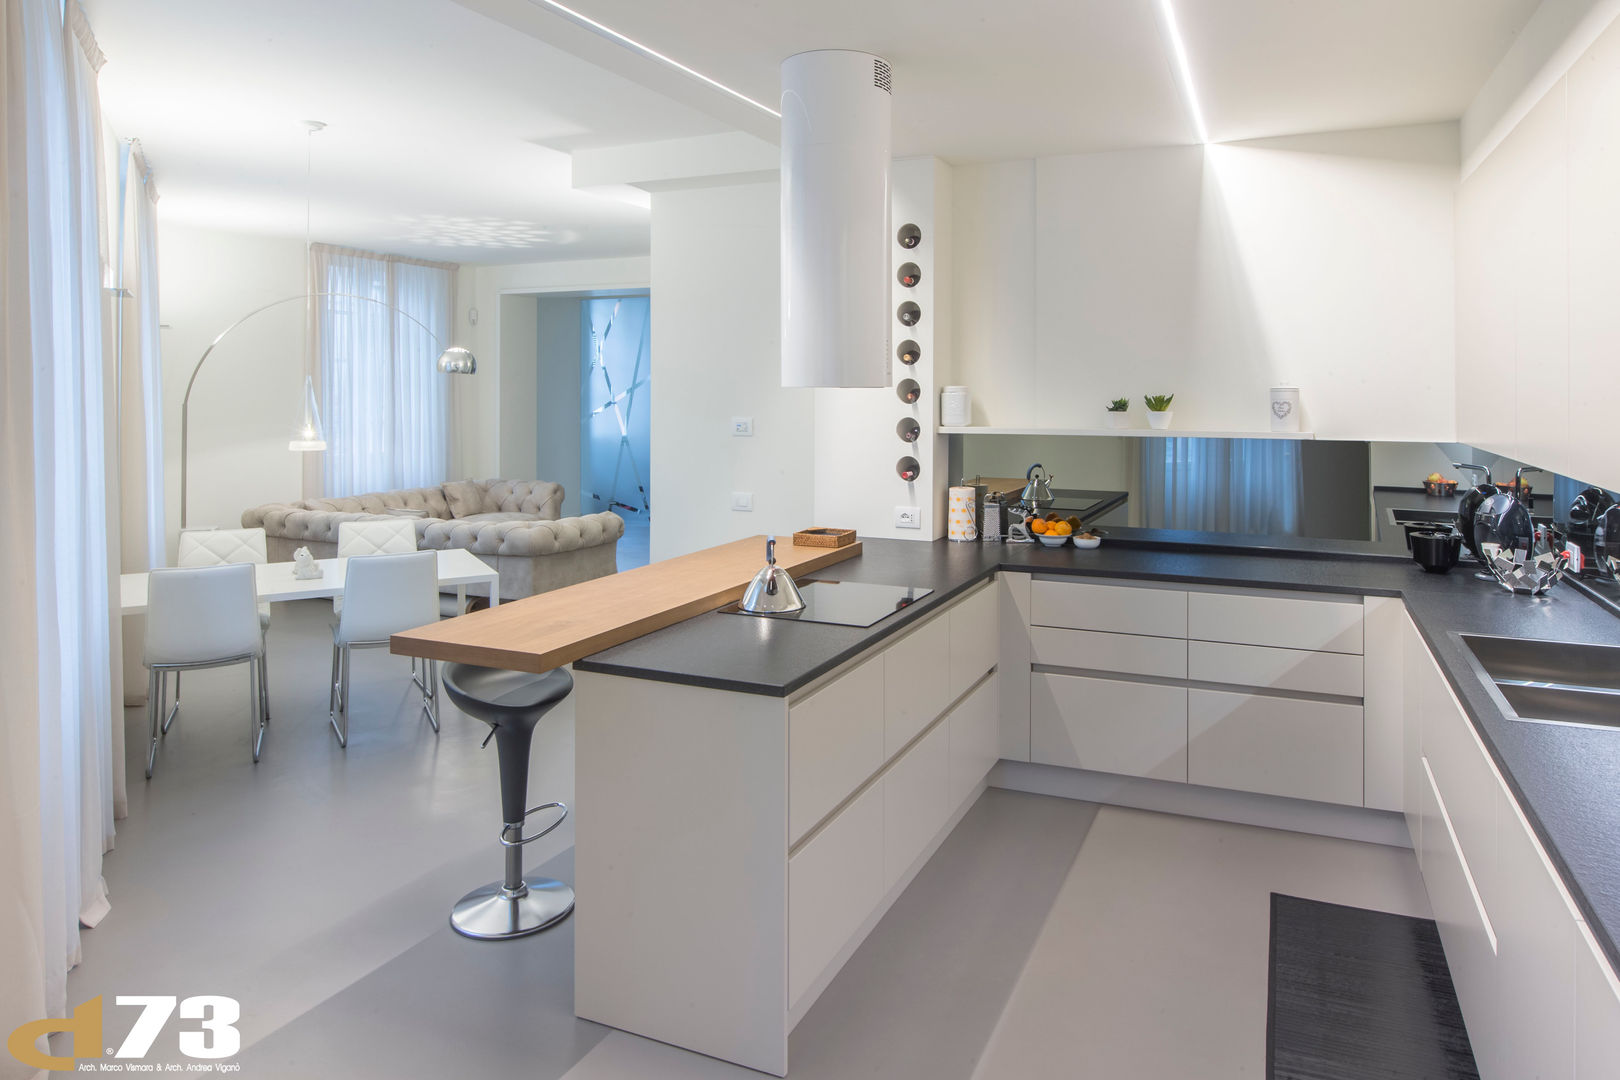 Appartamento privato pieno di luce, Studio D73 Studio D73 Cocinas modernas: Ideas, imágenes y decoración